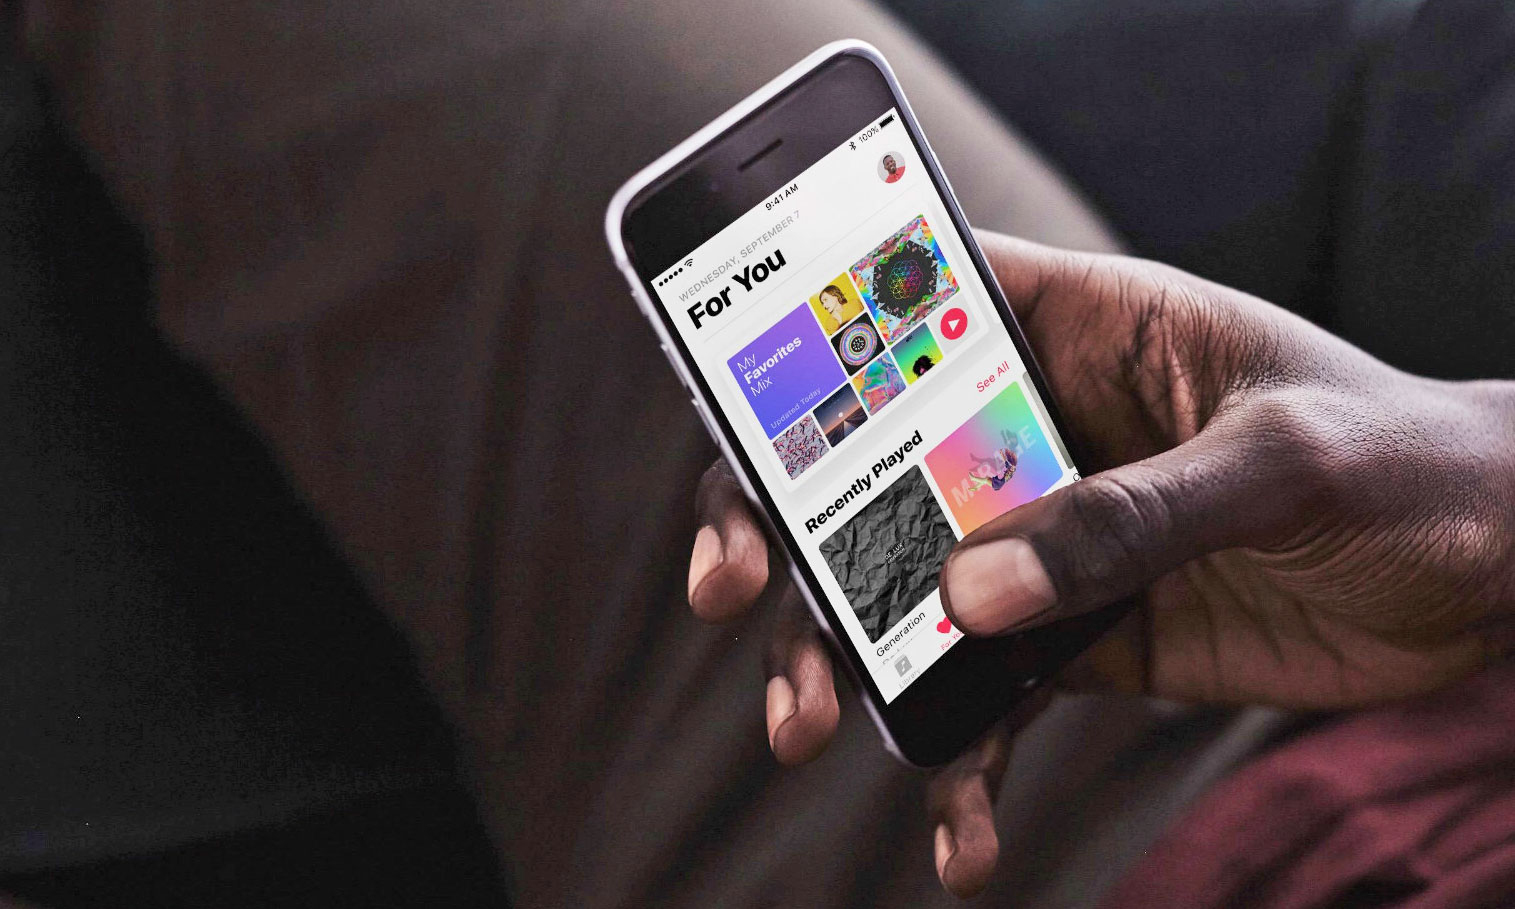 业内人士表示 Apple Music 在美订阅用户数已经超过 Spotify